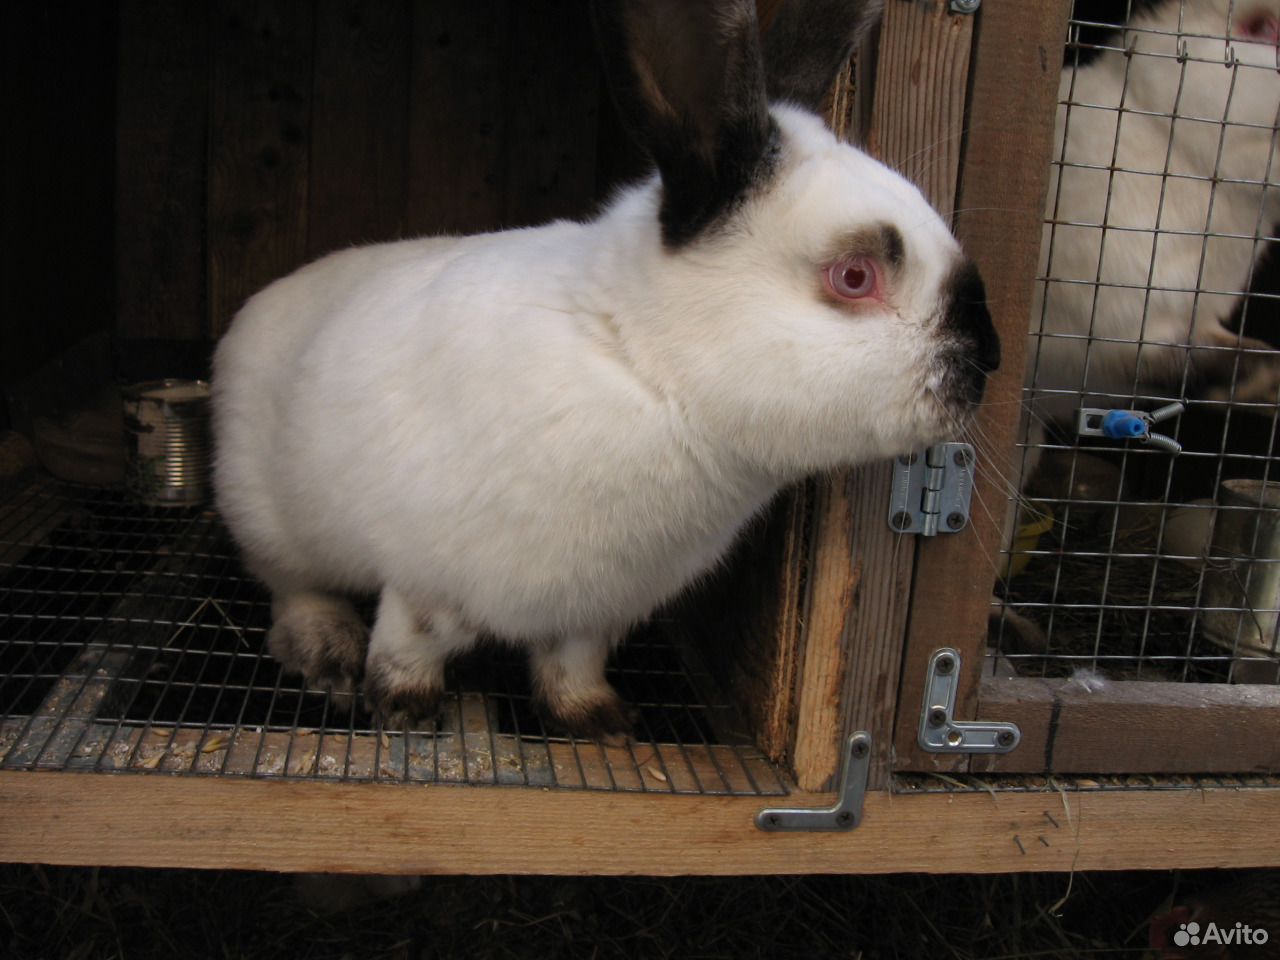 Купить кролика в Красноярске на племя. Купить чистопородных элитных бургундских кроликов на племя авито. Авито породы кроликов